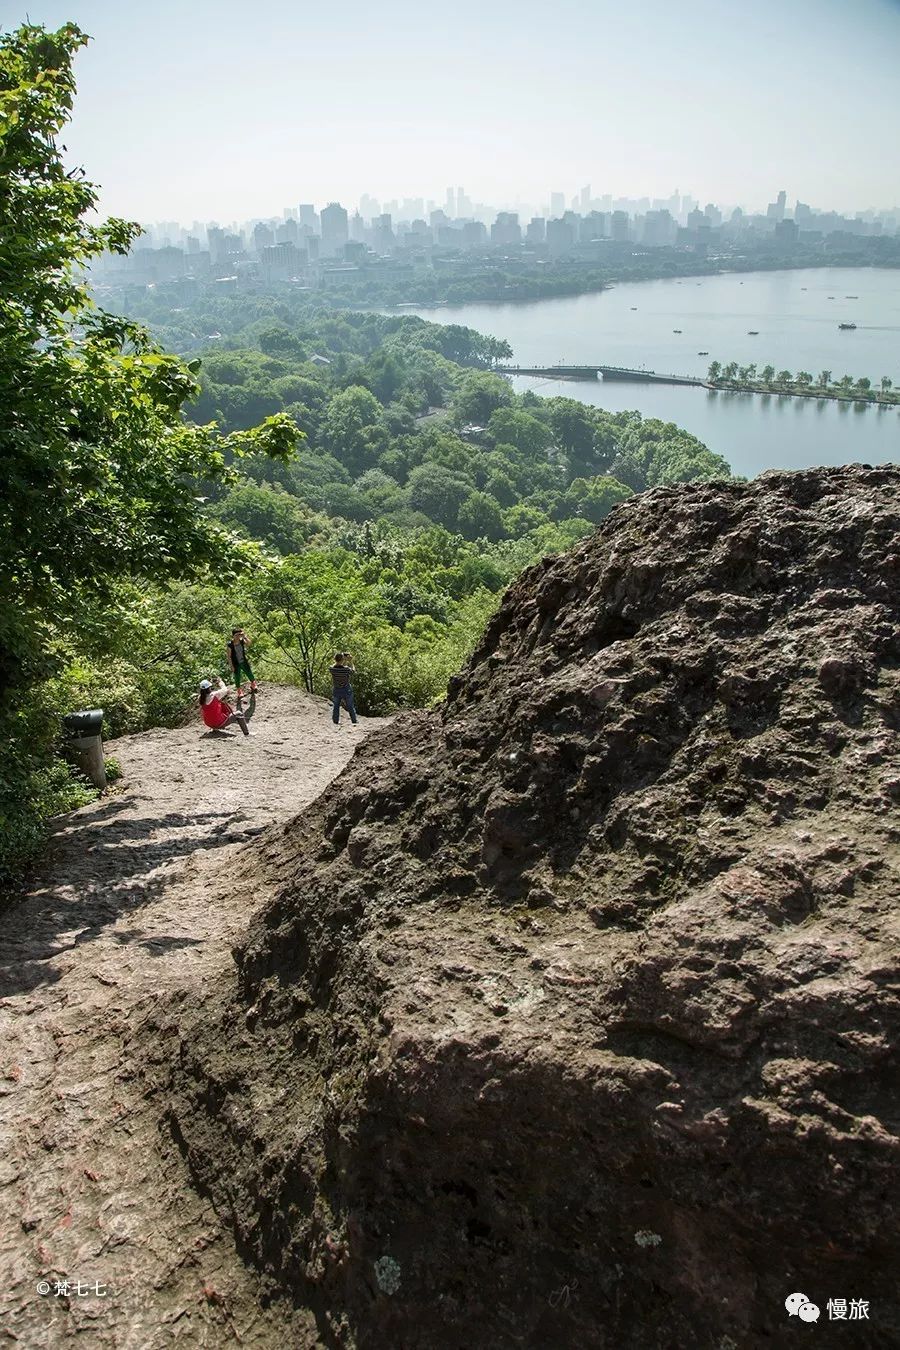 蛤蟆峰光秃秃的,台阶狭窄陡峭,有的地方只能手足并用爬上去.